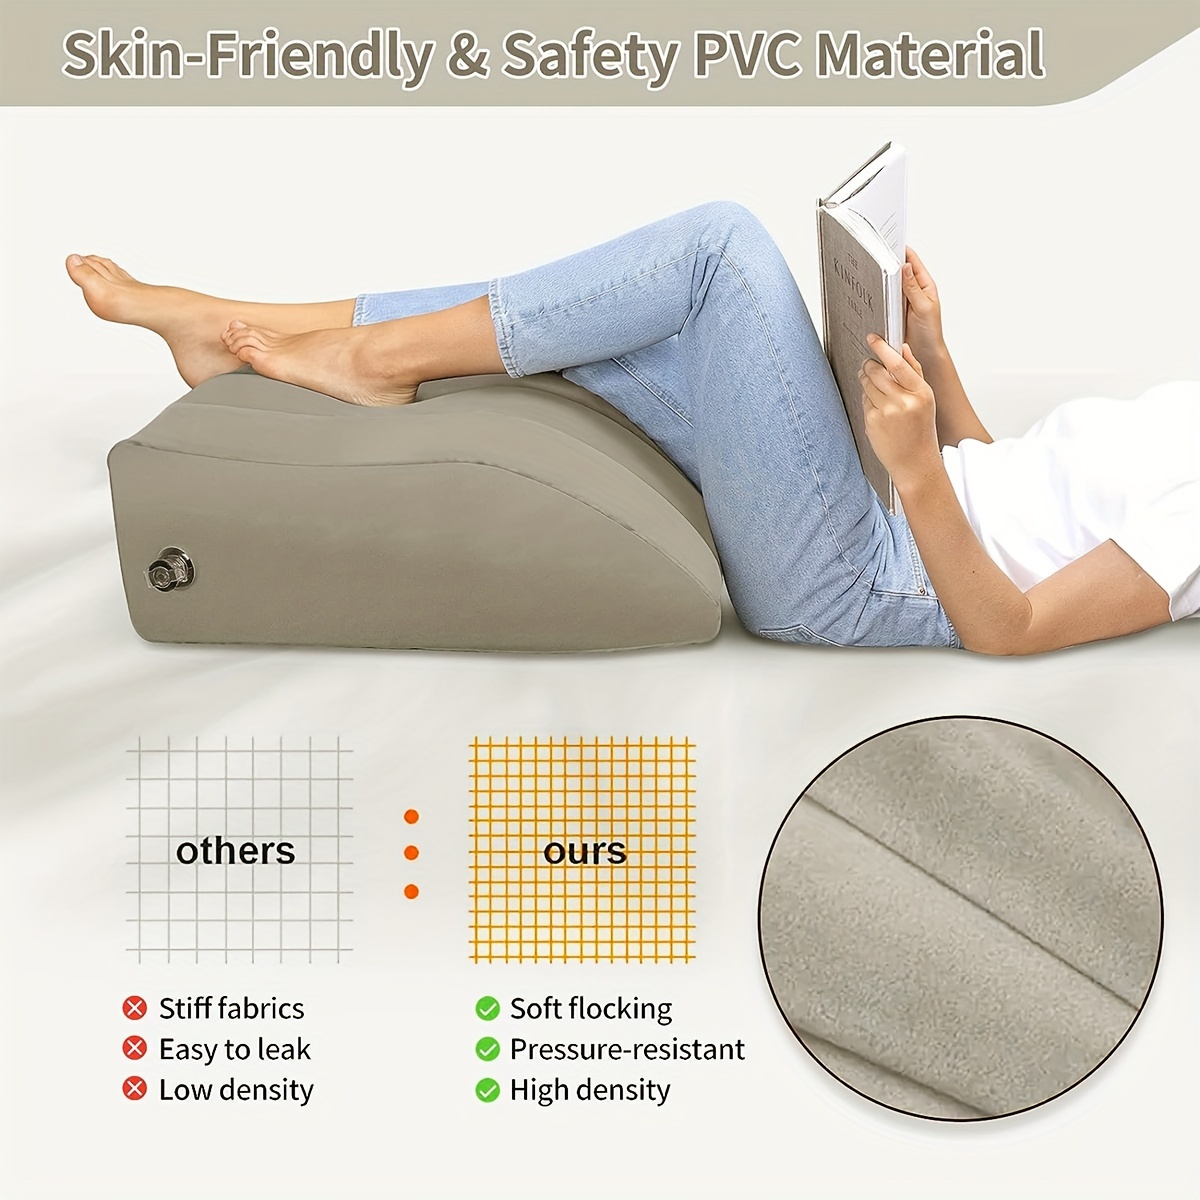 Leg Elevation Foam Wedge Pillow For Leg Knee Hip & Lower Back Pain